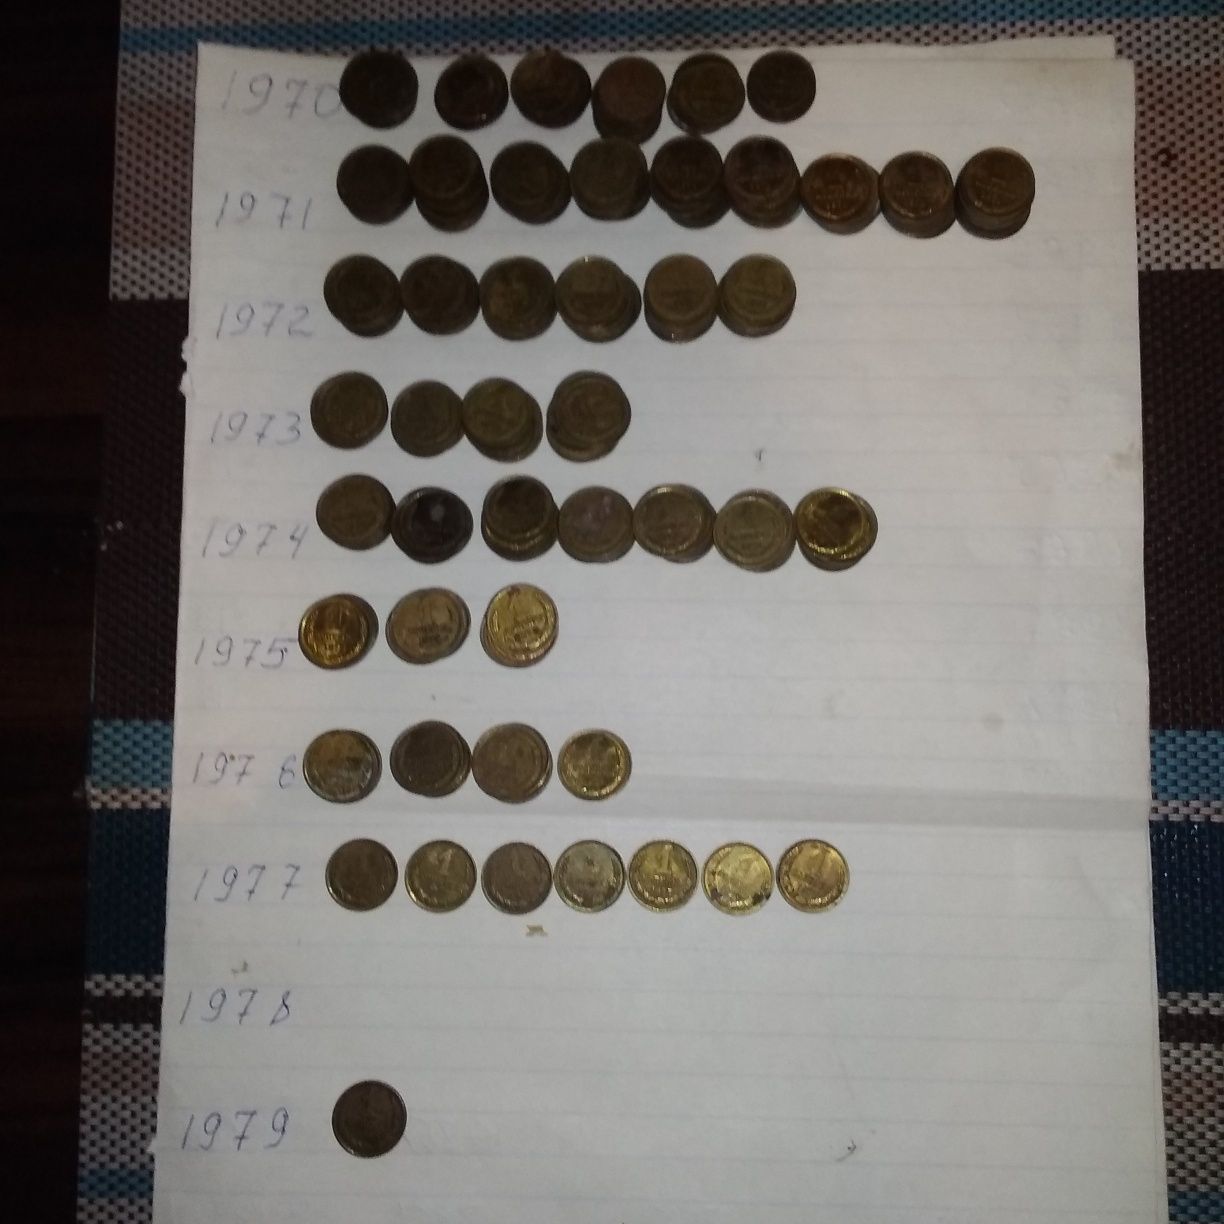 Монеты 1 копейка с 1970 по 1979/разное количества/См.фото/Отправляю